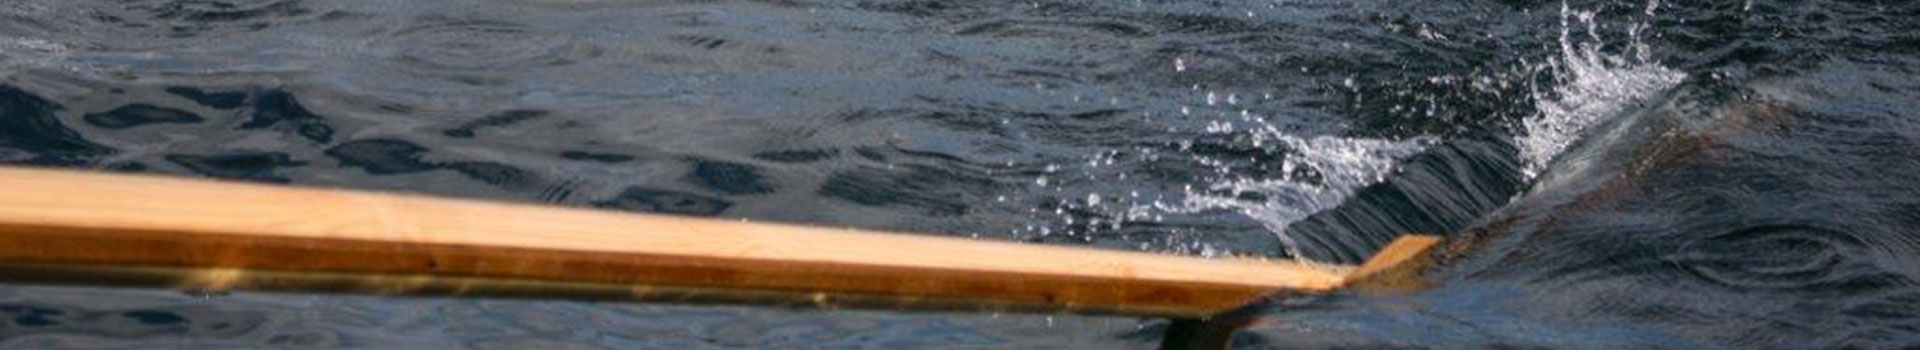 Tag: <span>adaptive rowing</span>